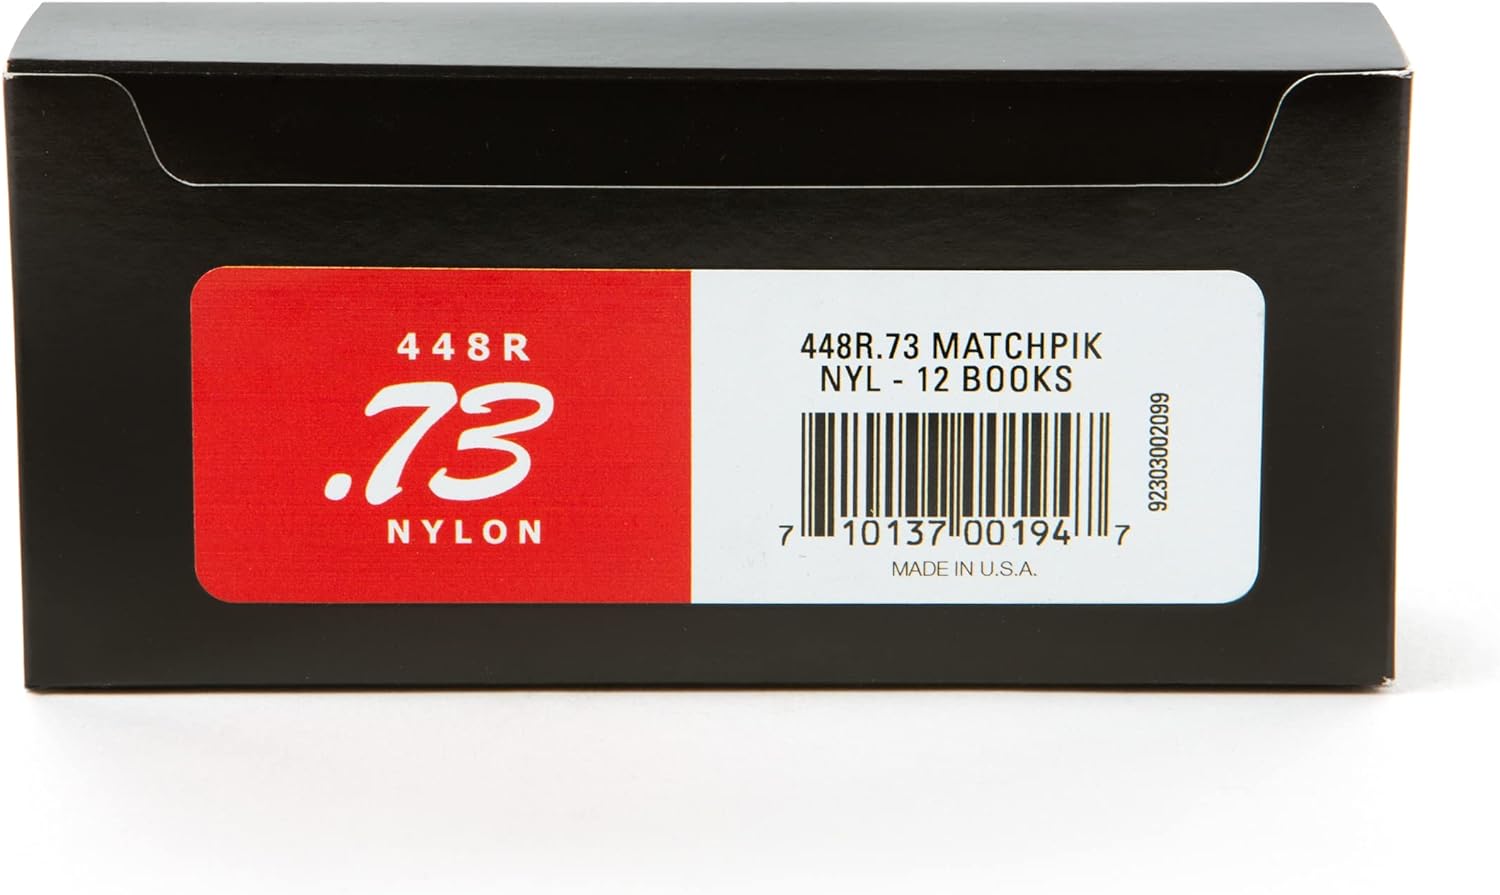 Медиаторы Dunlop 448R073 Match Pik Nylon (12 упак по 6 шт) медиаторы alice ap 12k целлулоид разно ные перламутровые 12шт толщина 0 46 0 81